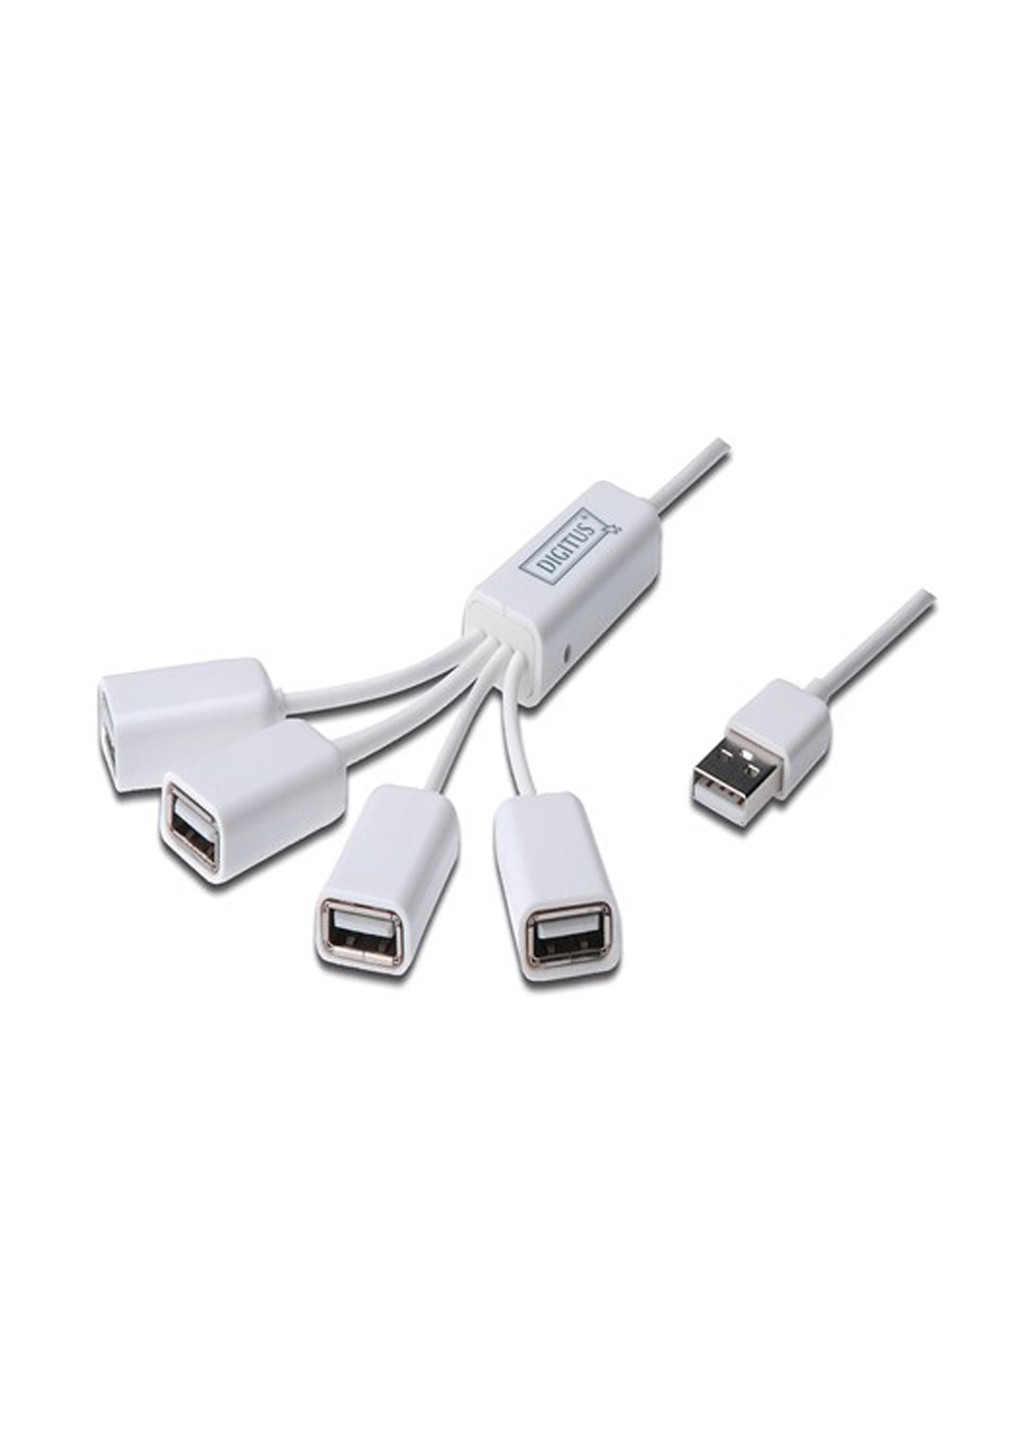 Концентратор USB 2.0, 4 порта, пасивный без БП, White (DA-70216) Digitus концентратор USB 2.0, 4 порта, пасивный без БП, White (DA-70216) белый